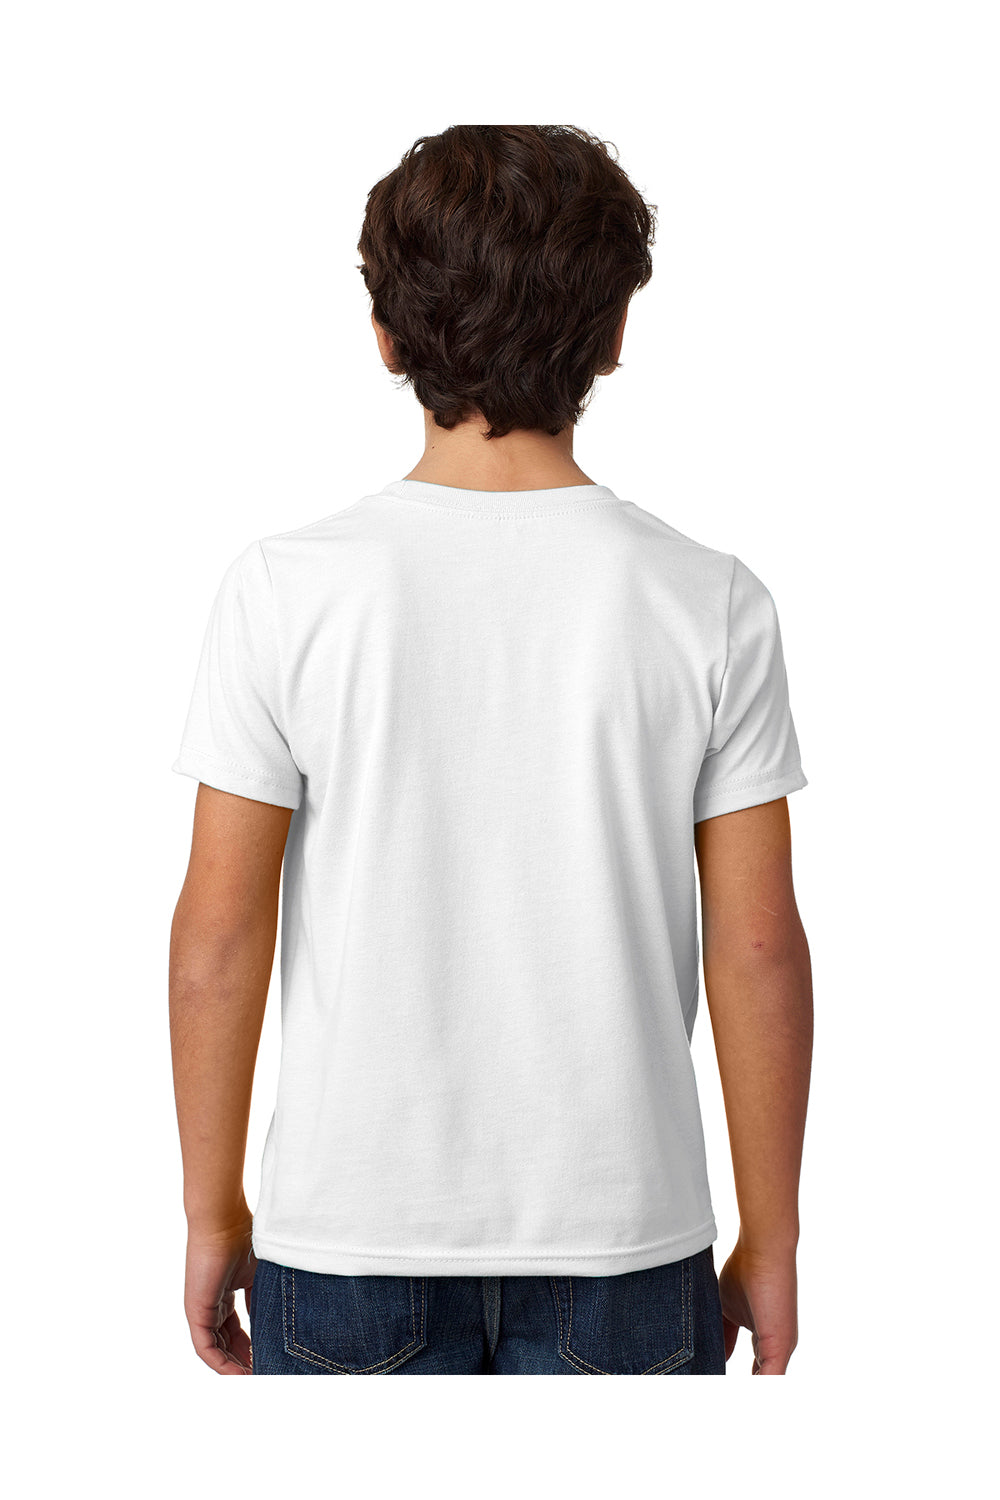 Next Level 3312 Youth CVC Jersey Short Sleeve Crewneck T-Shirt White Back